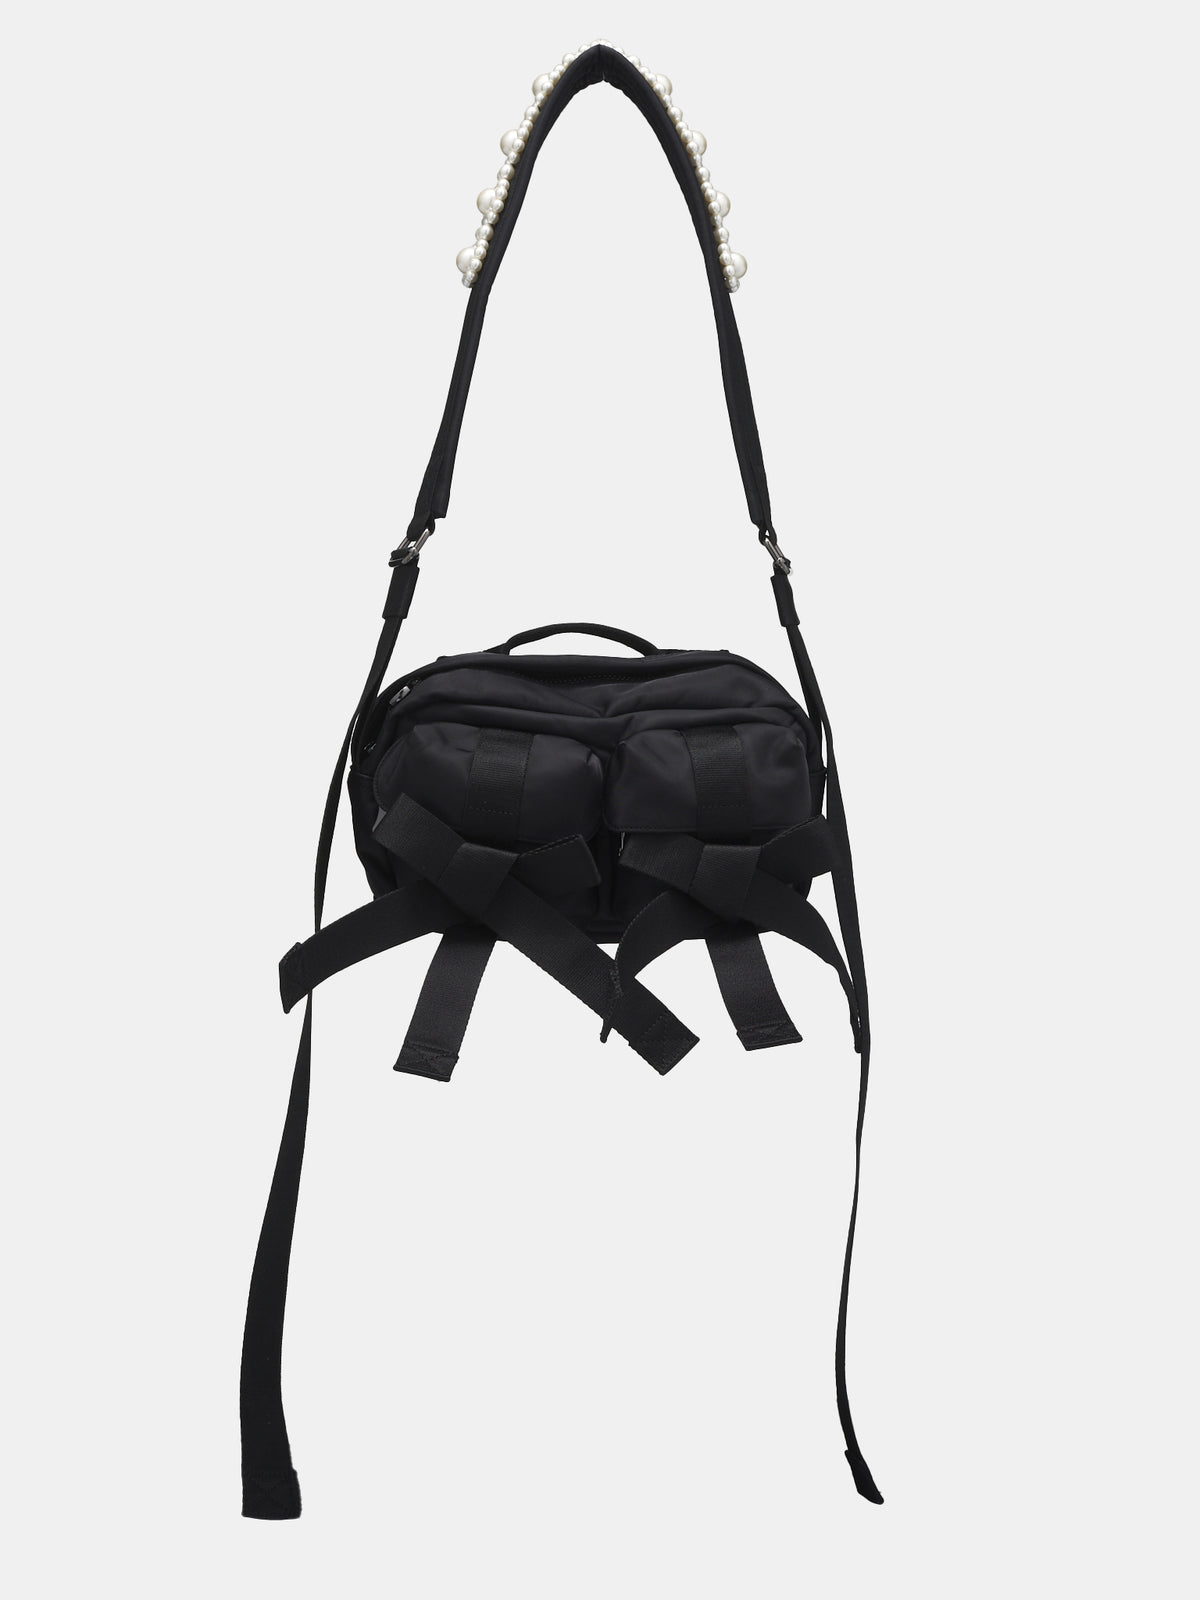 Beaded Bow Crossbody Bag (BAG149B-0761-BLACK-PEARL)